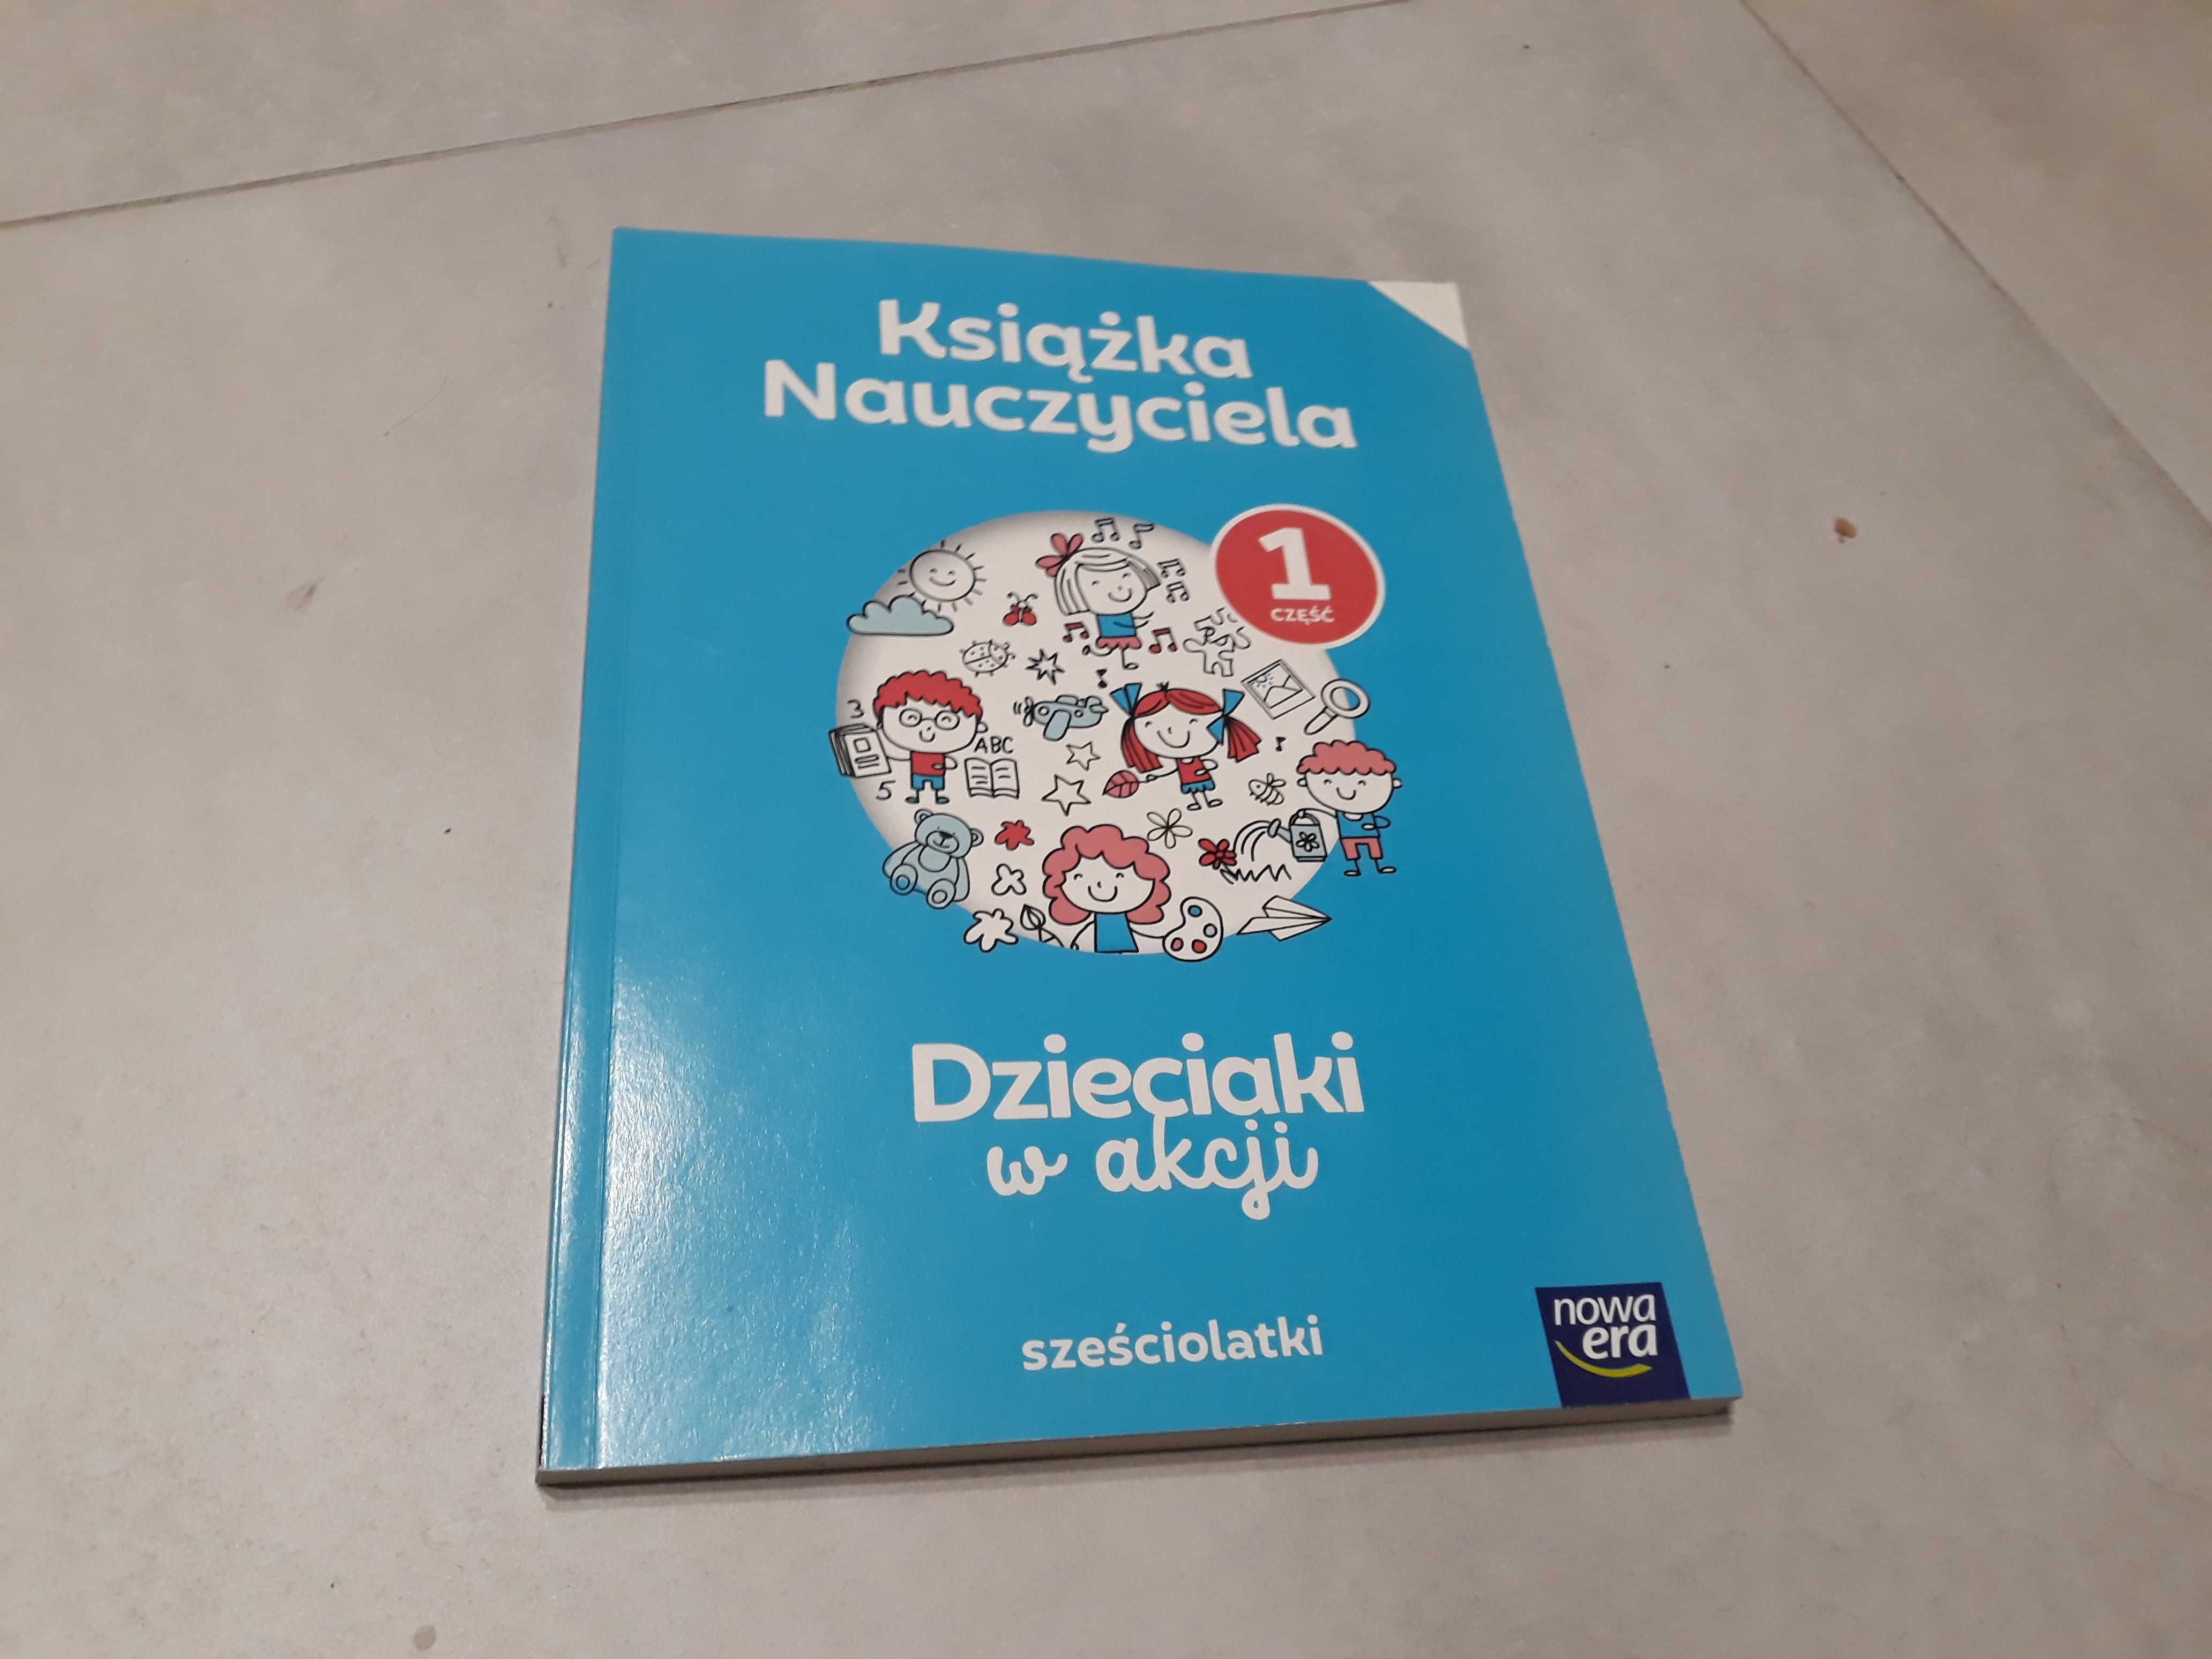 Dzieciaki w akcji -książka nauczyciela -sześciolatki -cz.1 -NIEUŻYWANA